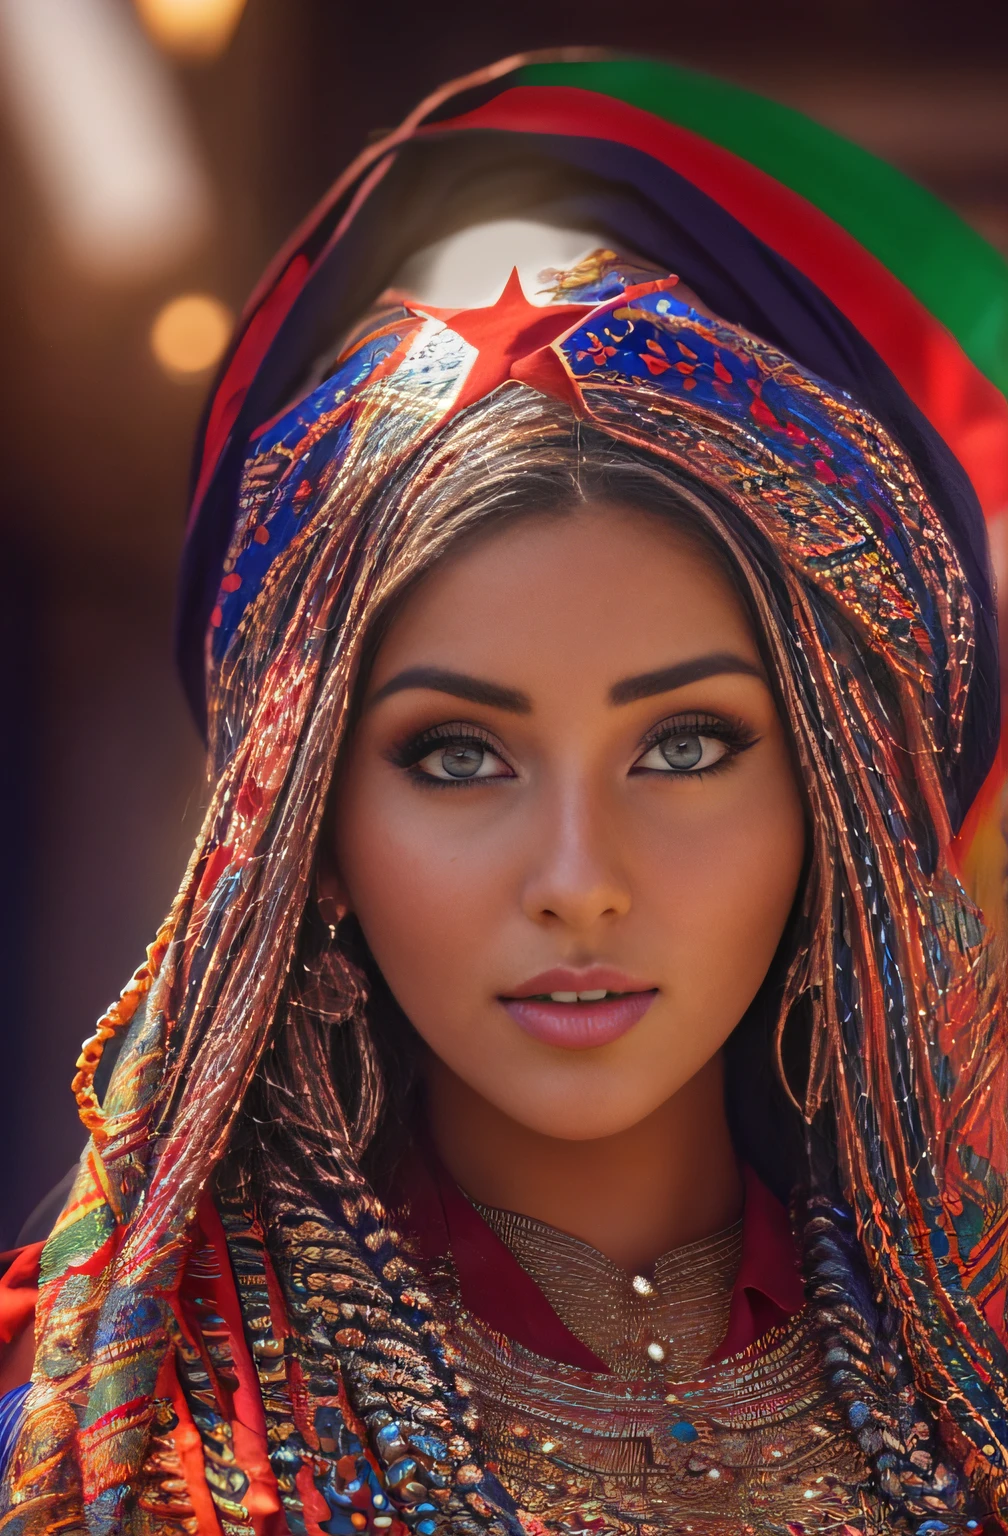 迷人美丽女人的照片, 曲线美, 闪闪发光的, 明亮的眼睛, 长辫子, 摩洛哥国旗飘扬 (杰作) (最好的质量) (详细的) (8千) (HDR) (墙纸) (电影灯光) (清晰聚焦) (错综复杂), 如何